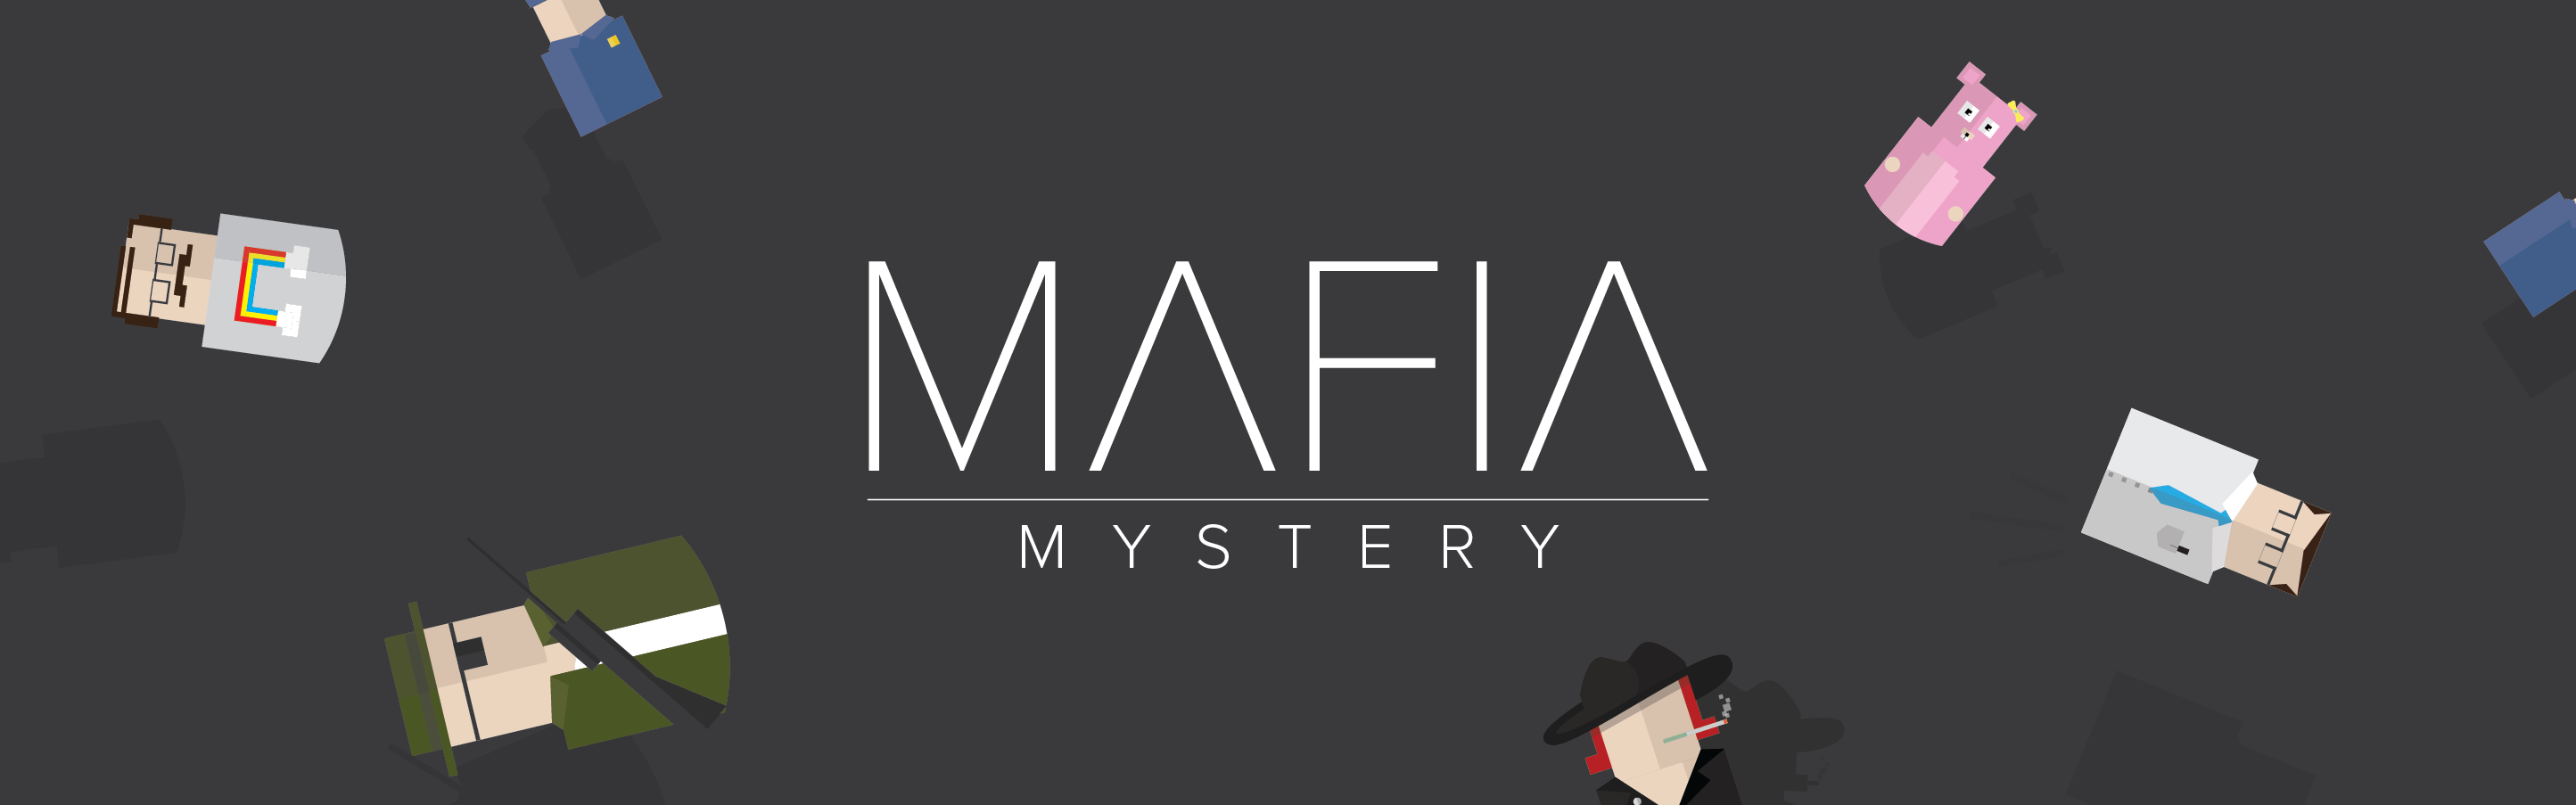 Mafia Mystery Header